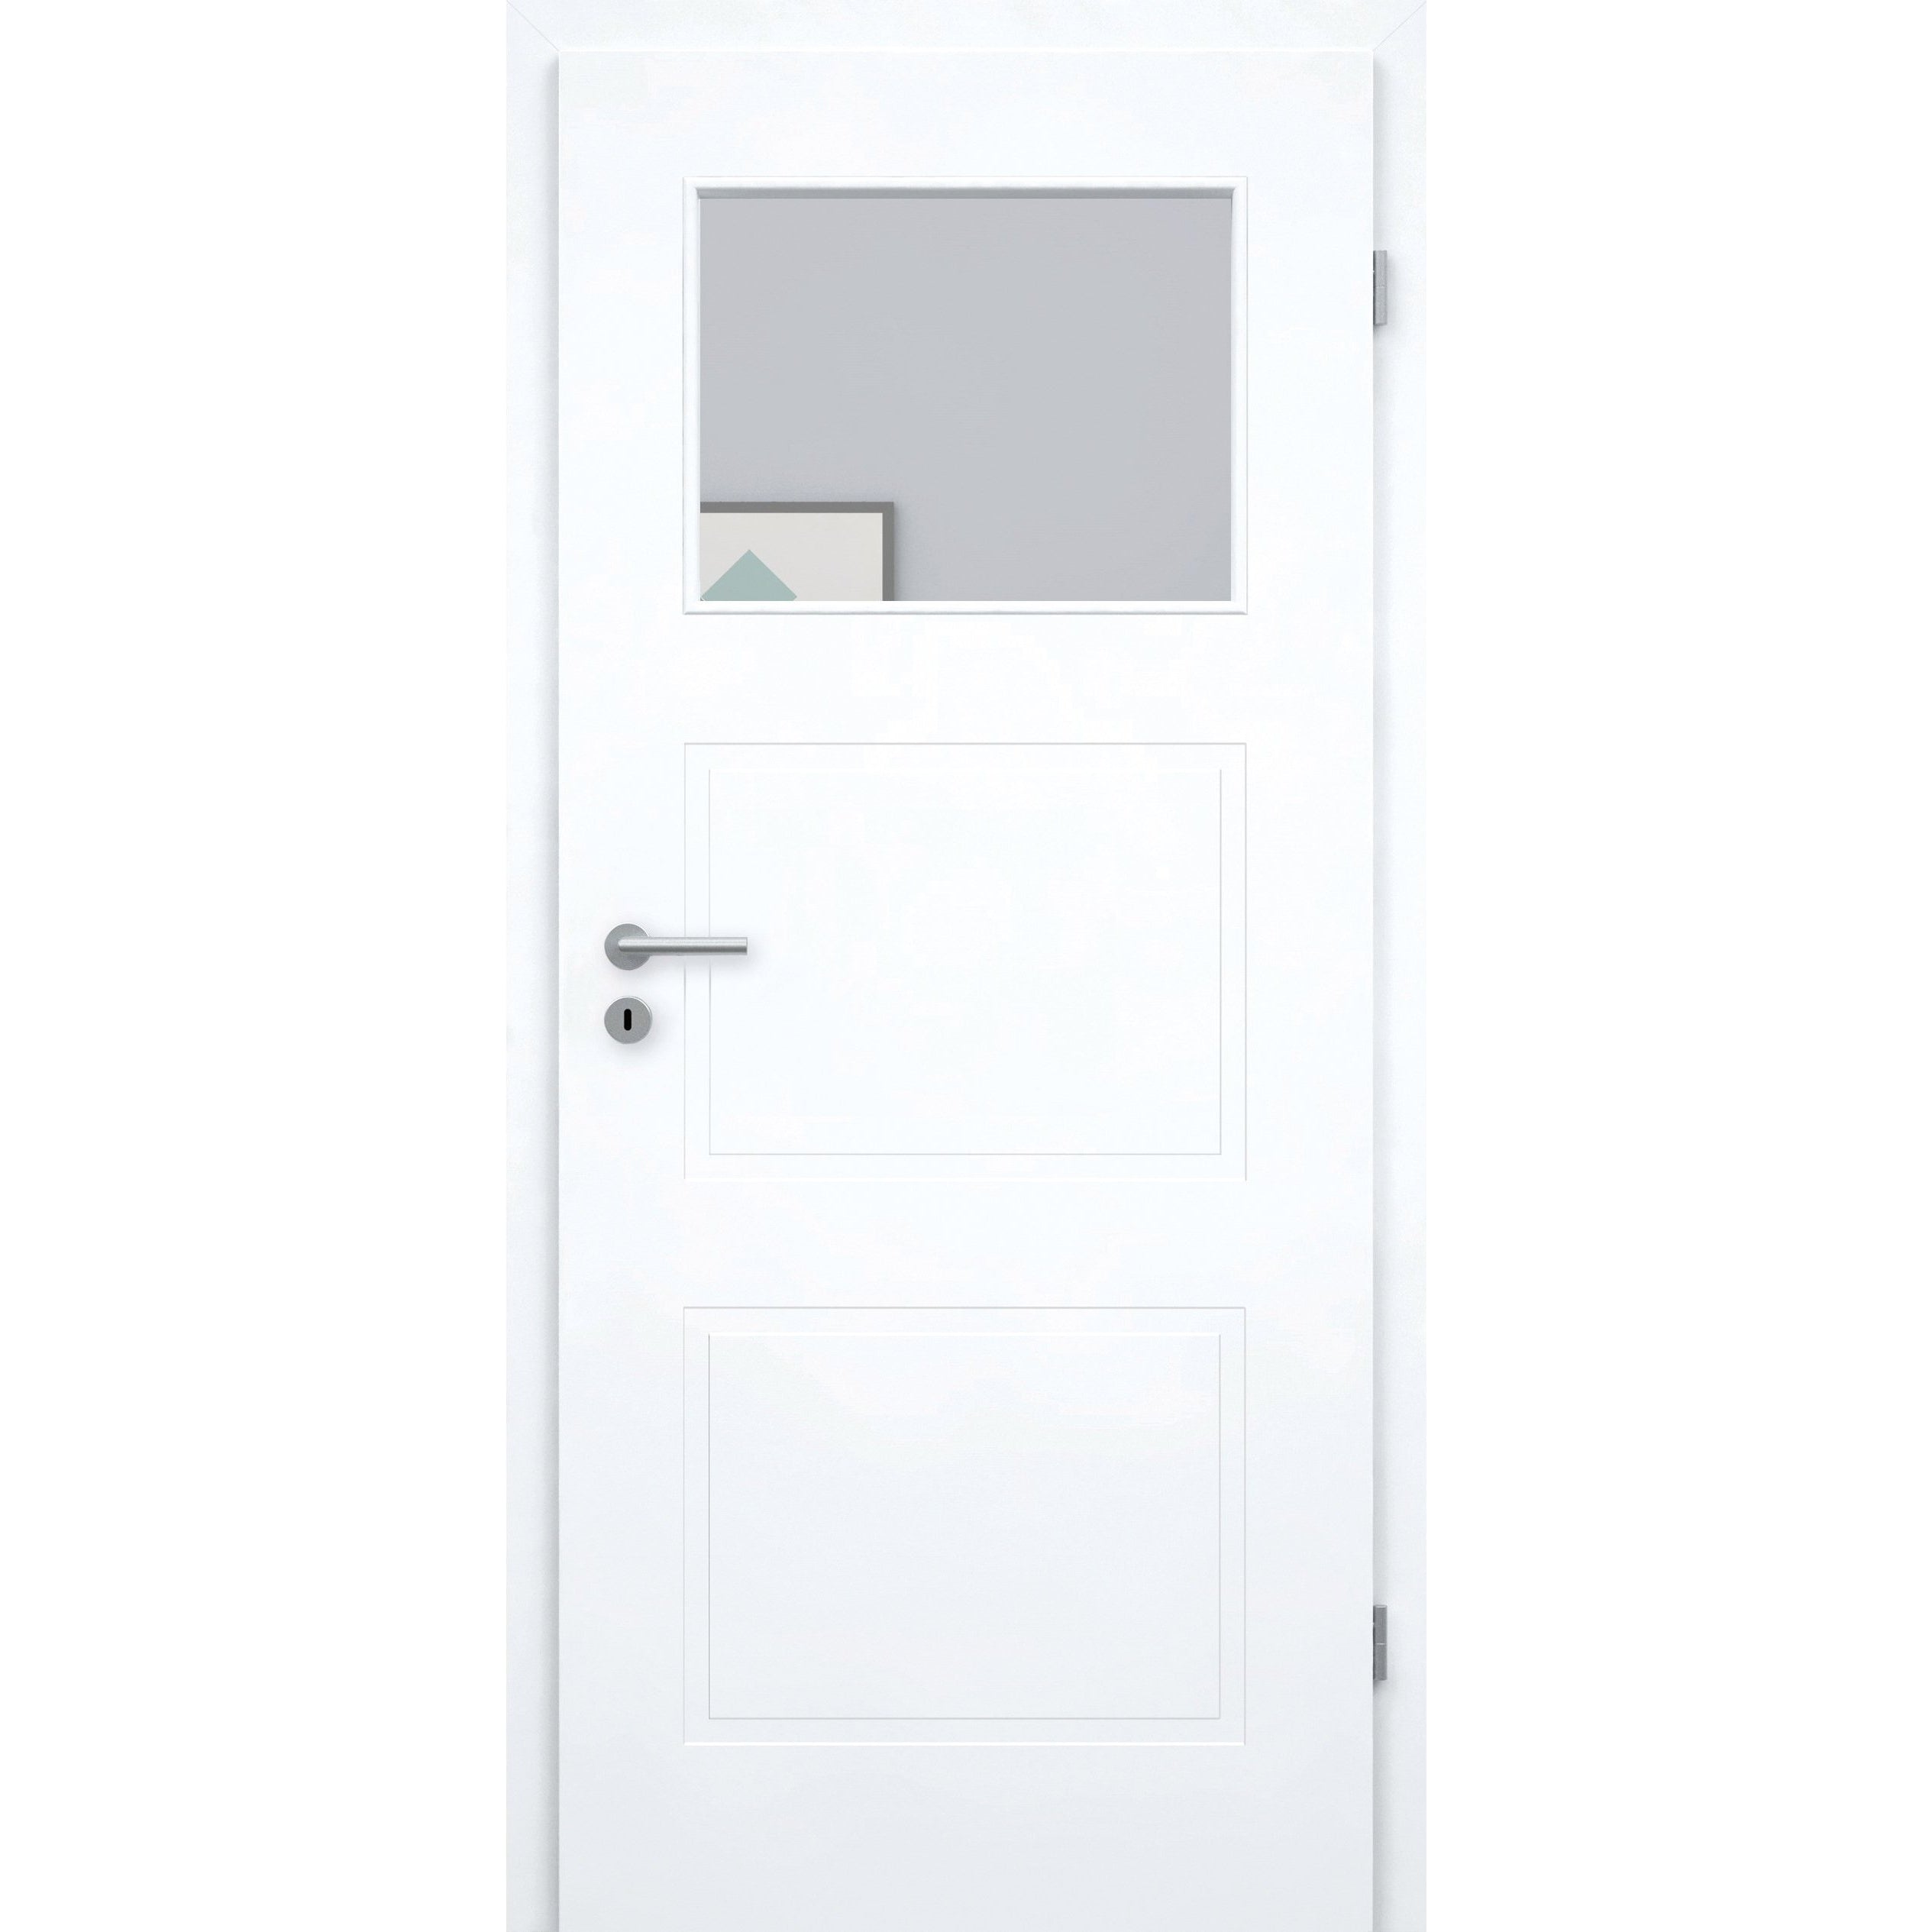 Zimmertür mit Lichtausschnitt brillant-weiß 3 Kassetten Designkante - Modell Stiltür M33LA1